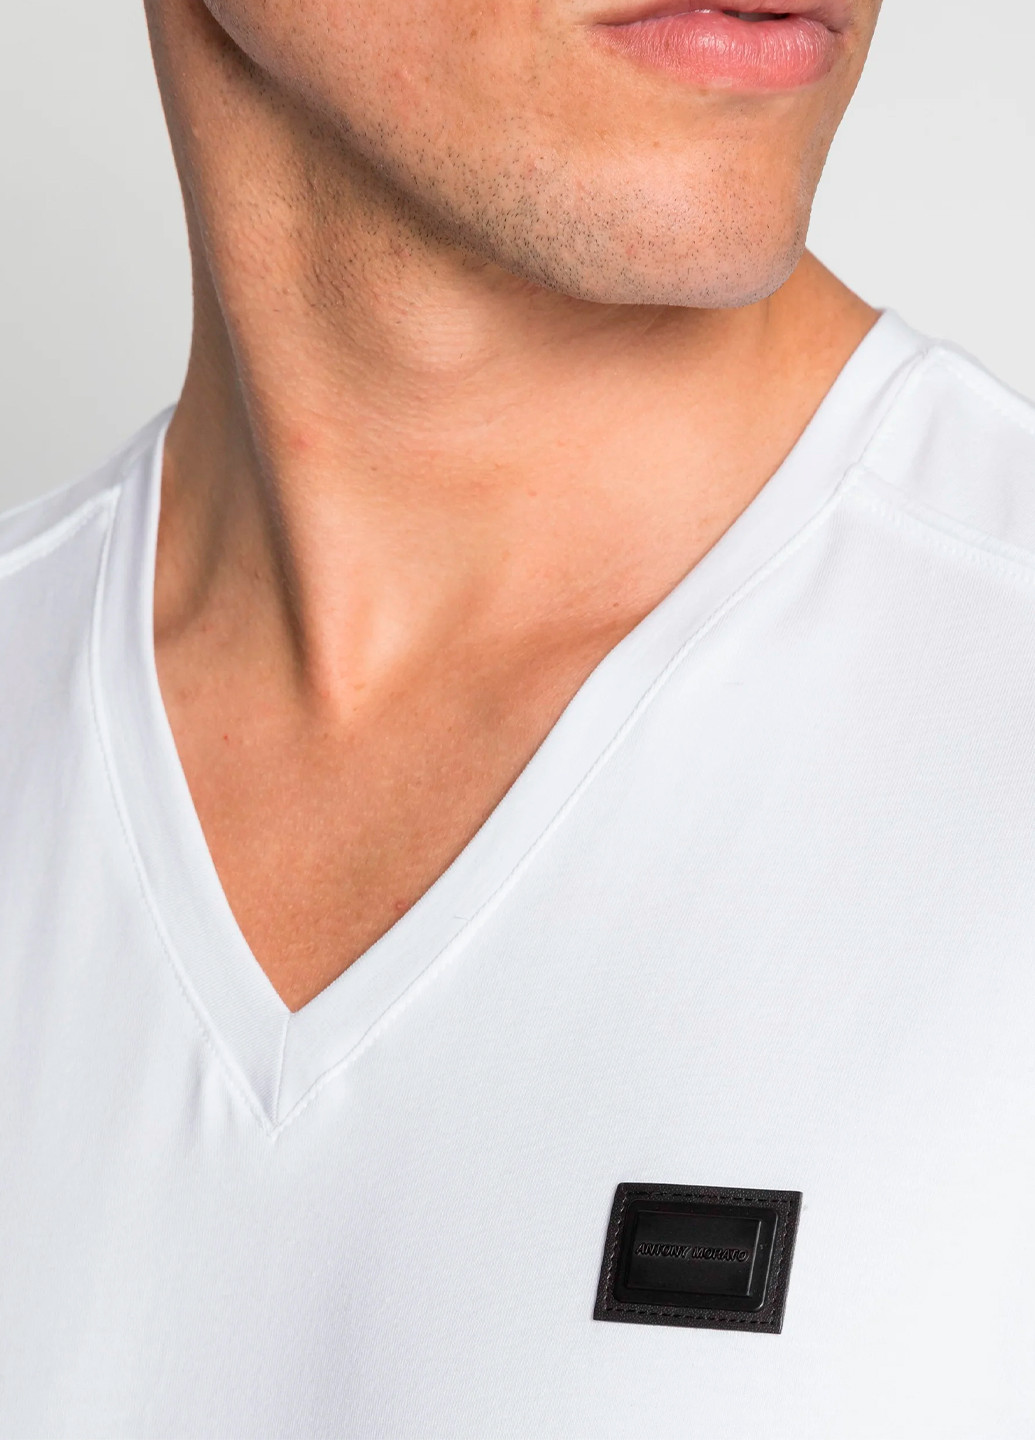 Біла чоловіча футболка з коротким рукавом Antony Morato